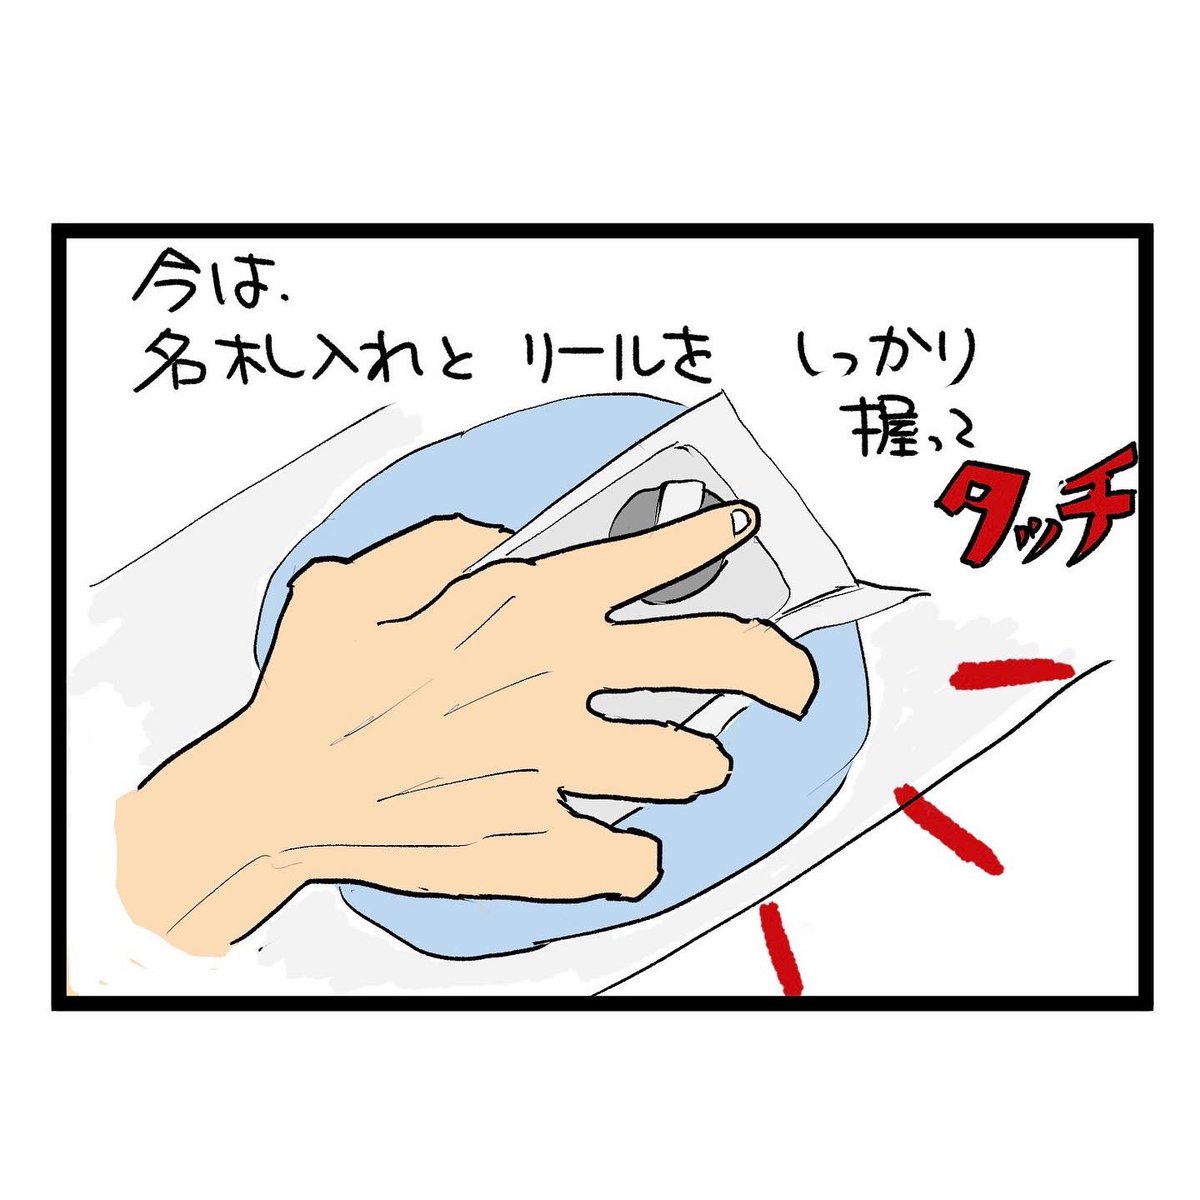 #四コマ漫画
#自動改札 